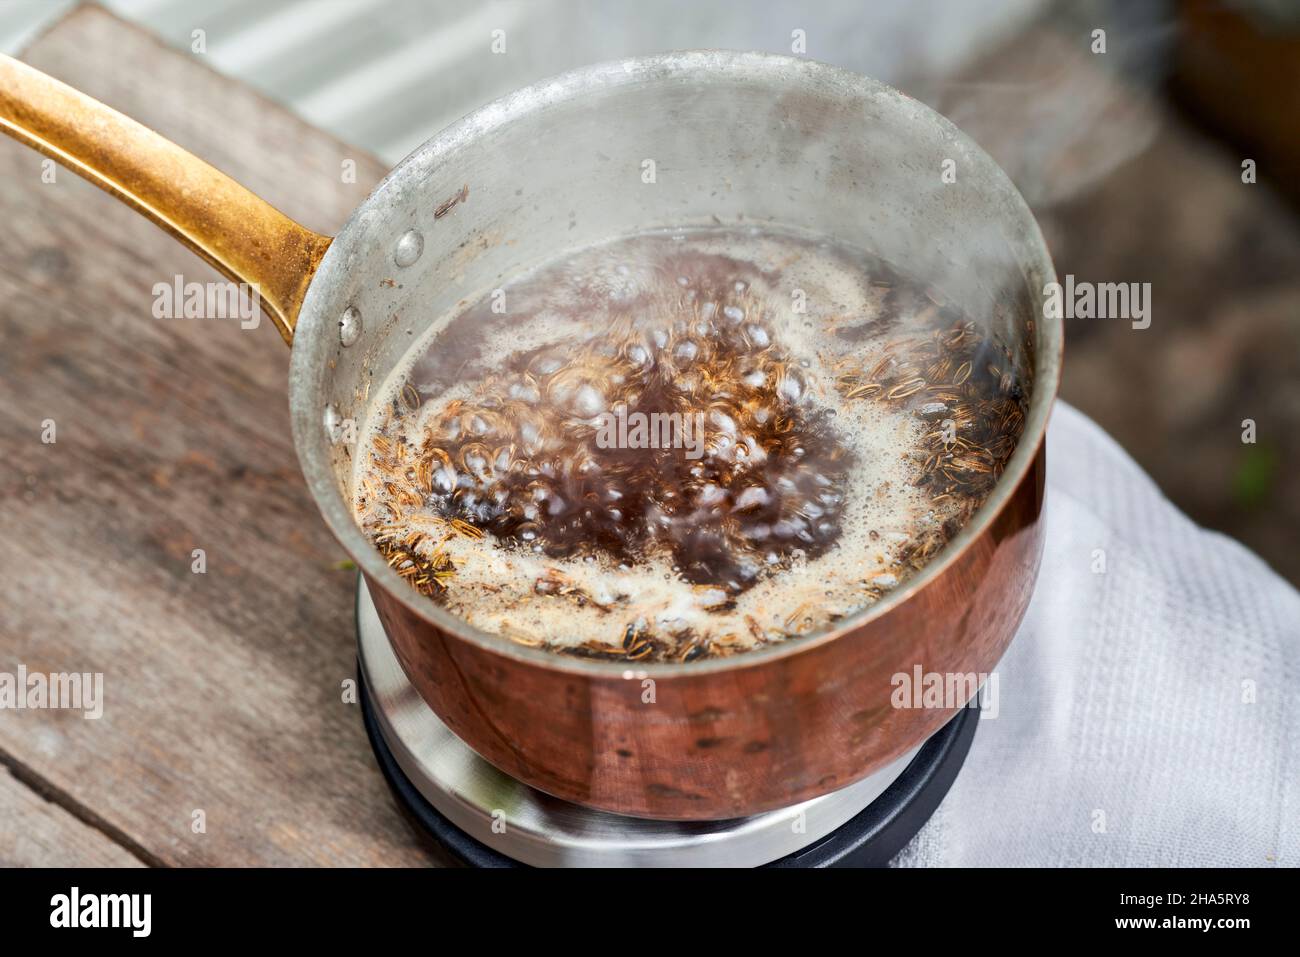 Arbeitsschritte mit Fenchel- und Fenchelsamen zur Herstellung von Fenchelsaft, Blick in einen Kupfertopf mit einer kochenden Lösung aus Fenchelsamen und Rohrzucker Stockfoto